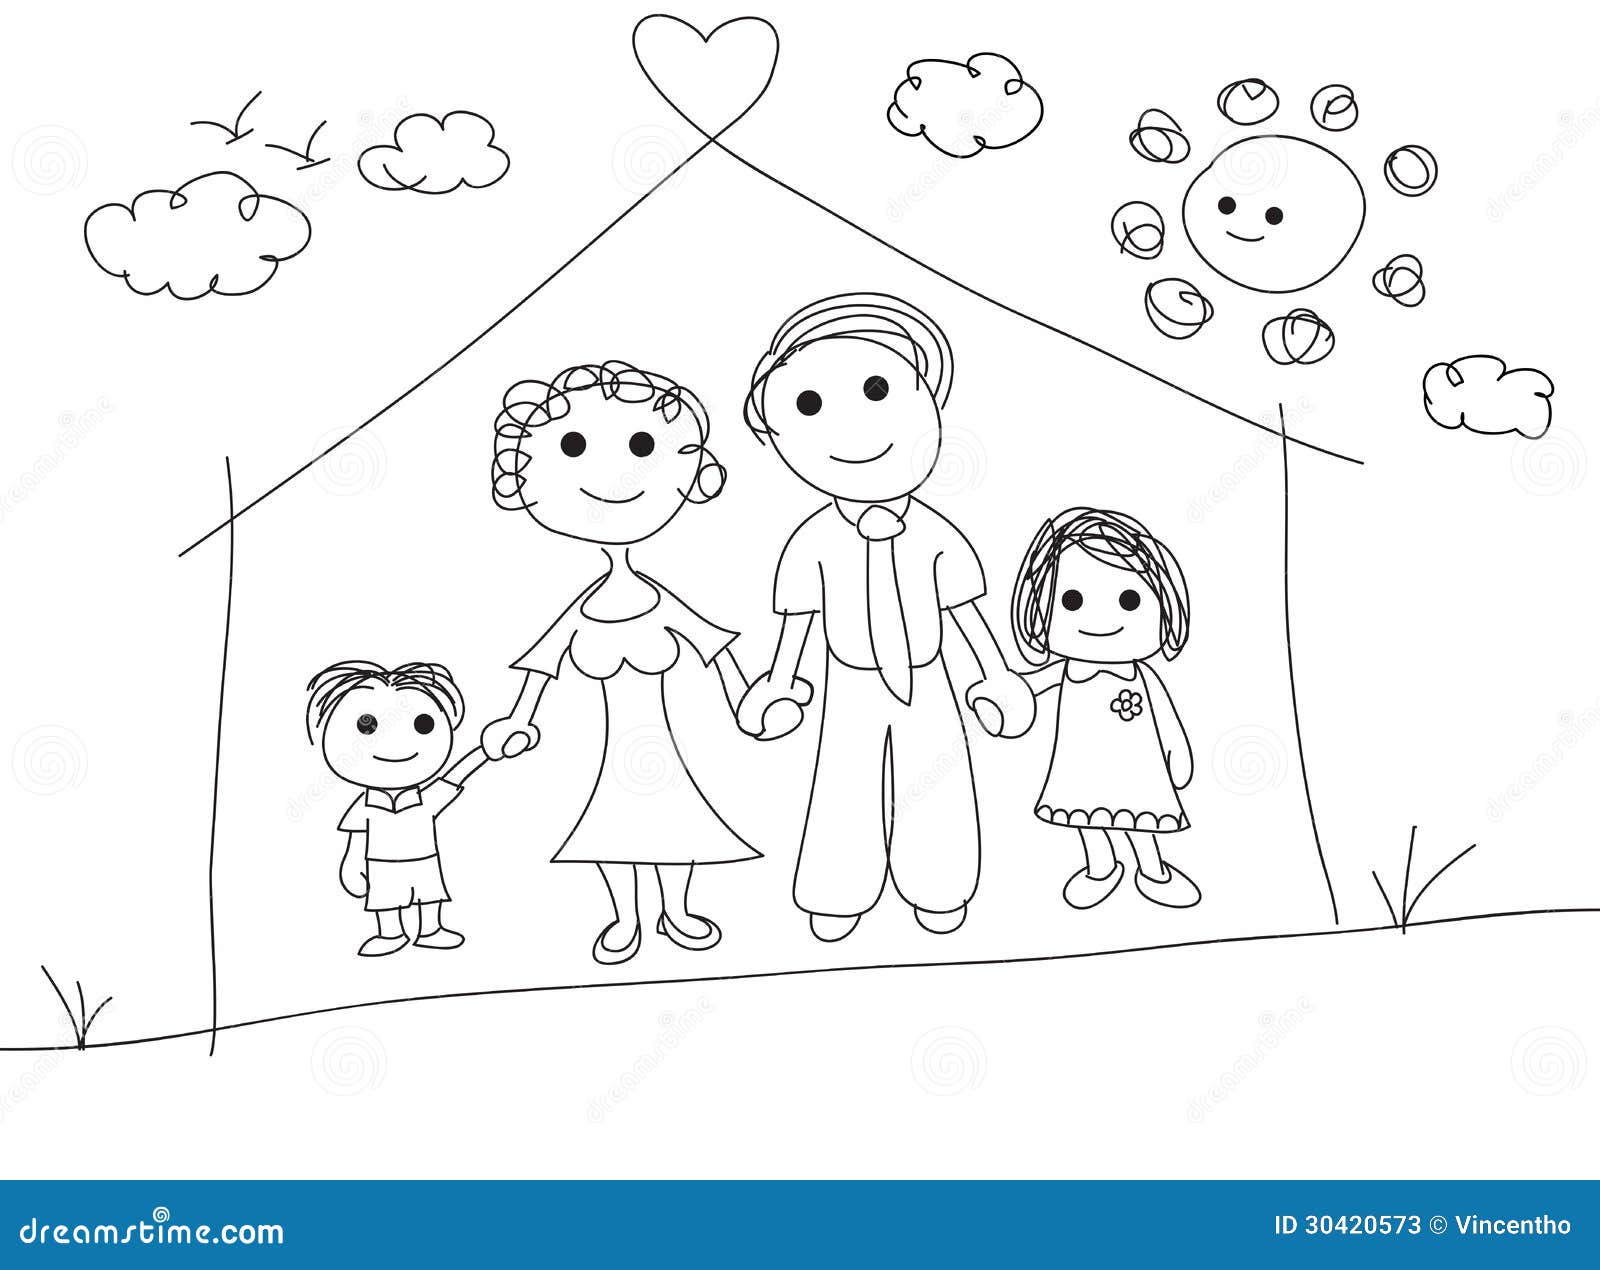 8 Family doodle ideas  family drawing family cartoon family illustration